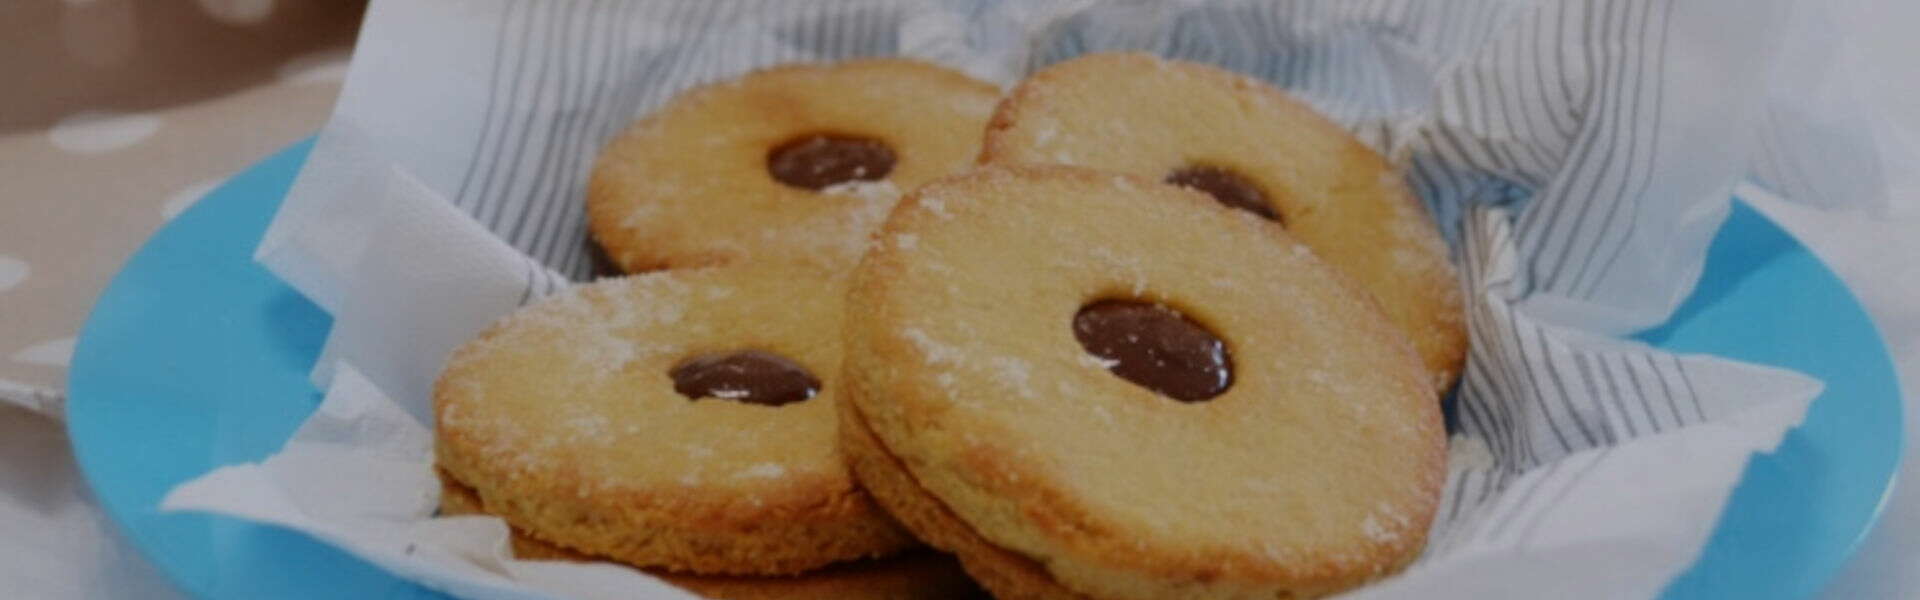 Occhi di bue: la ricetta dei biscotti con un cuore morbido che si scioglie in bocca